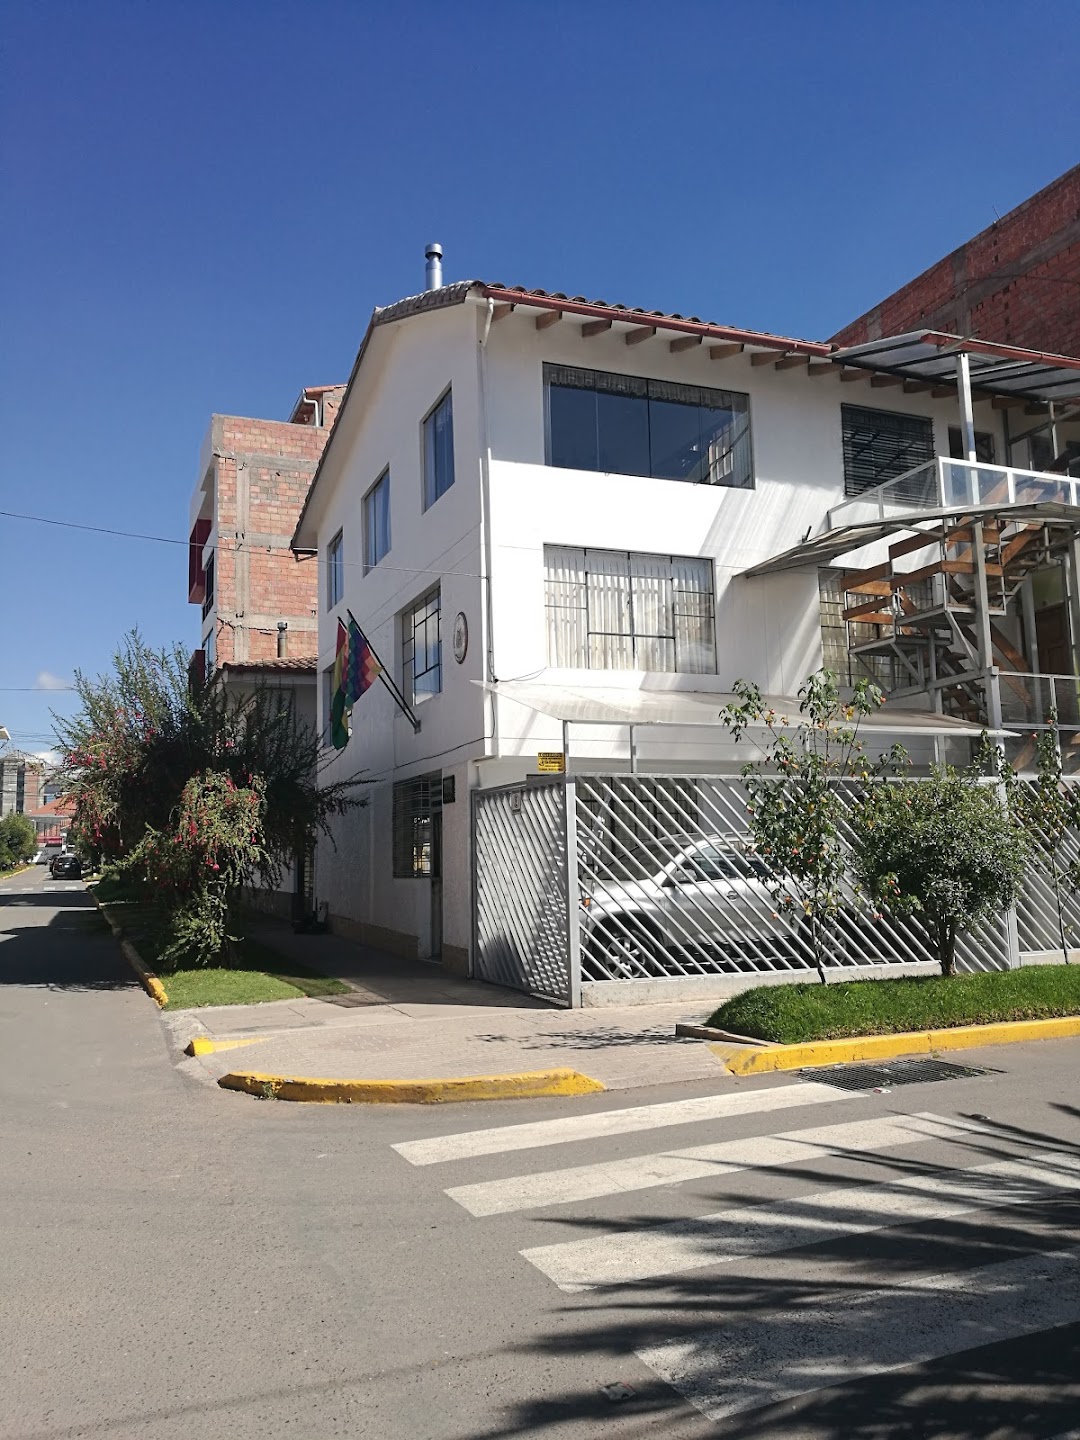 Bolivia embassy